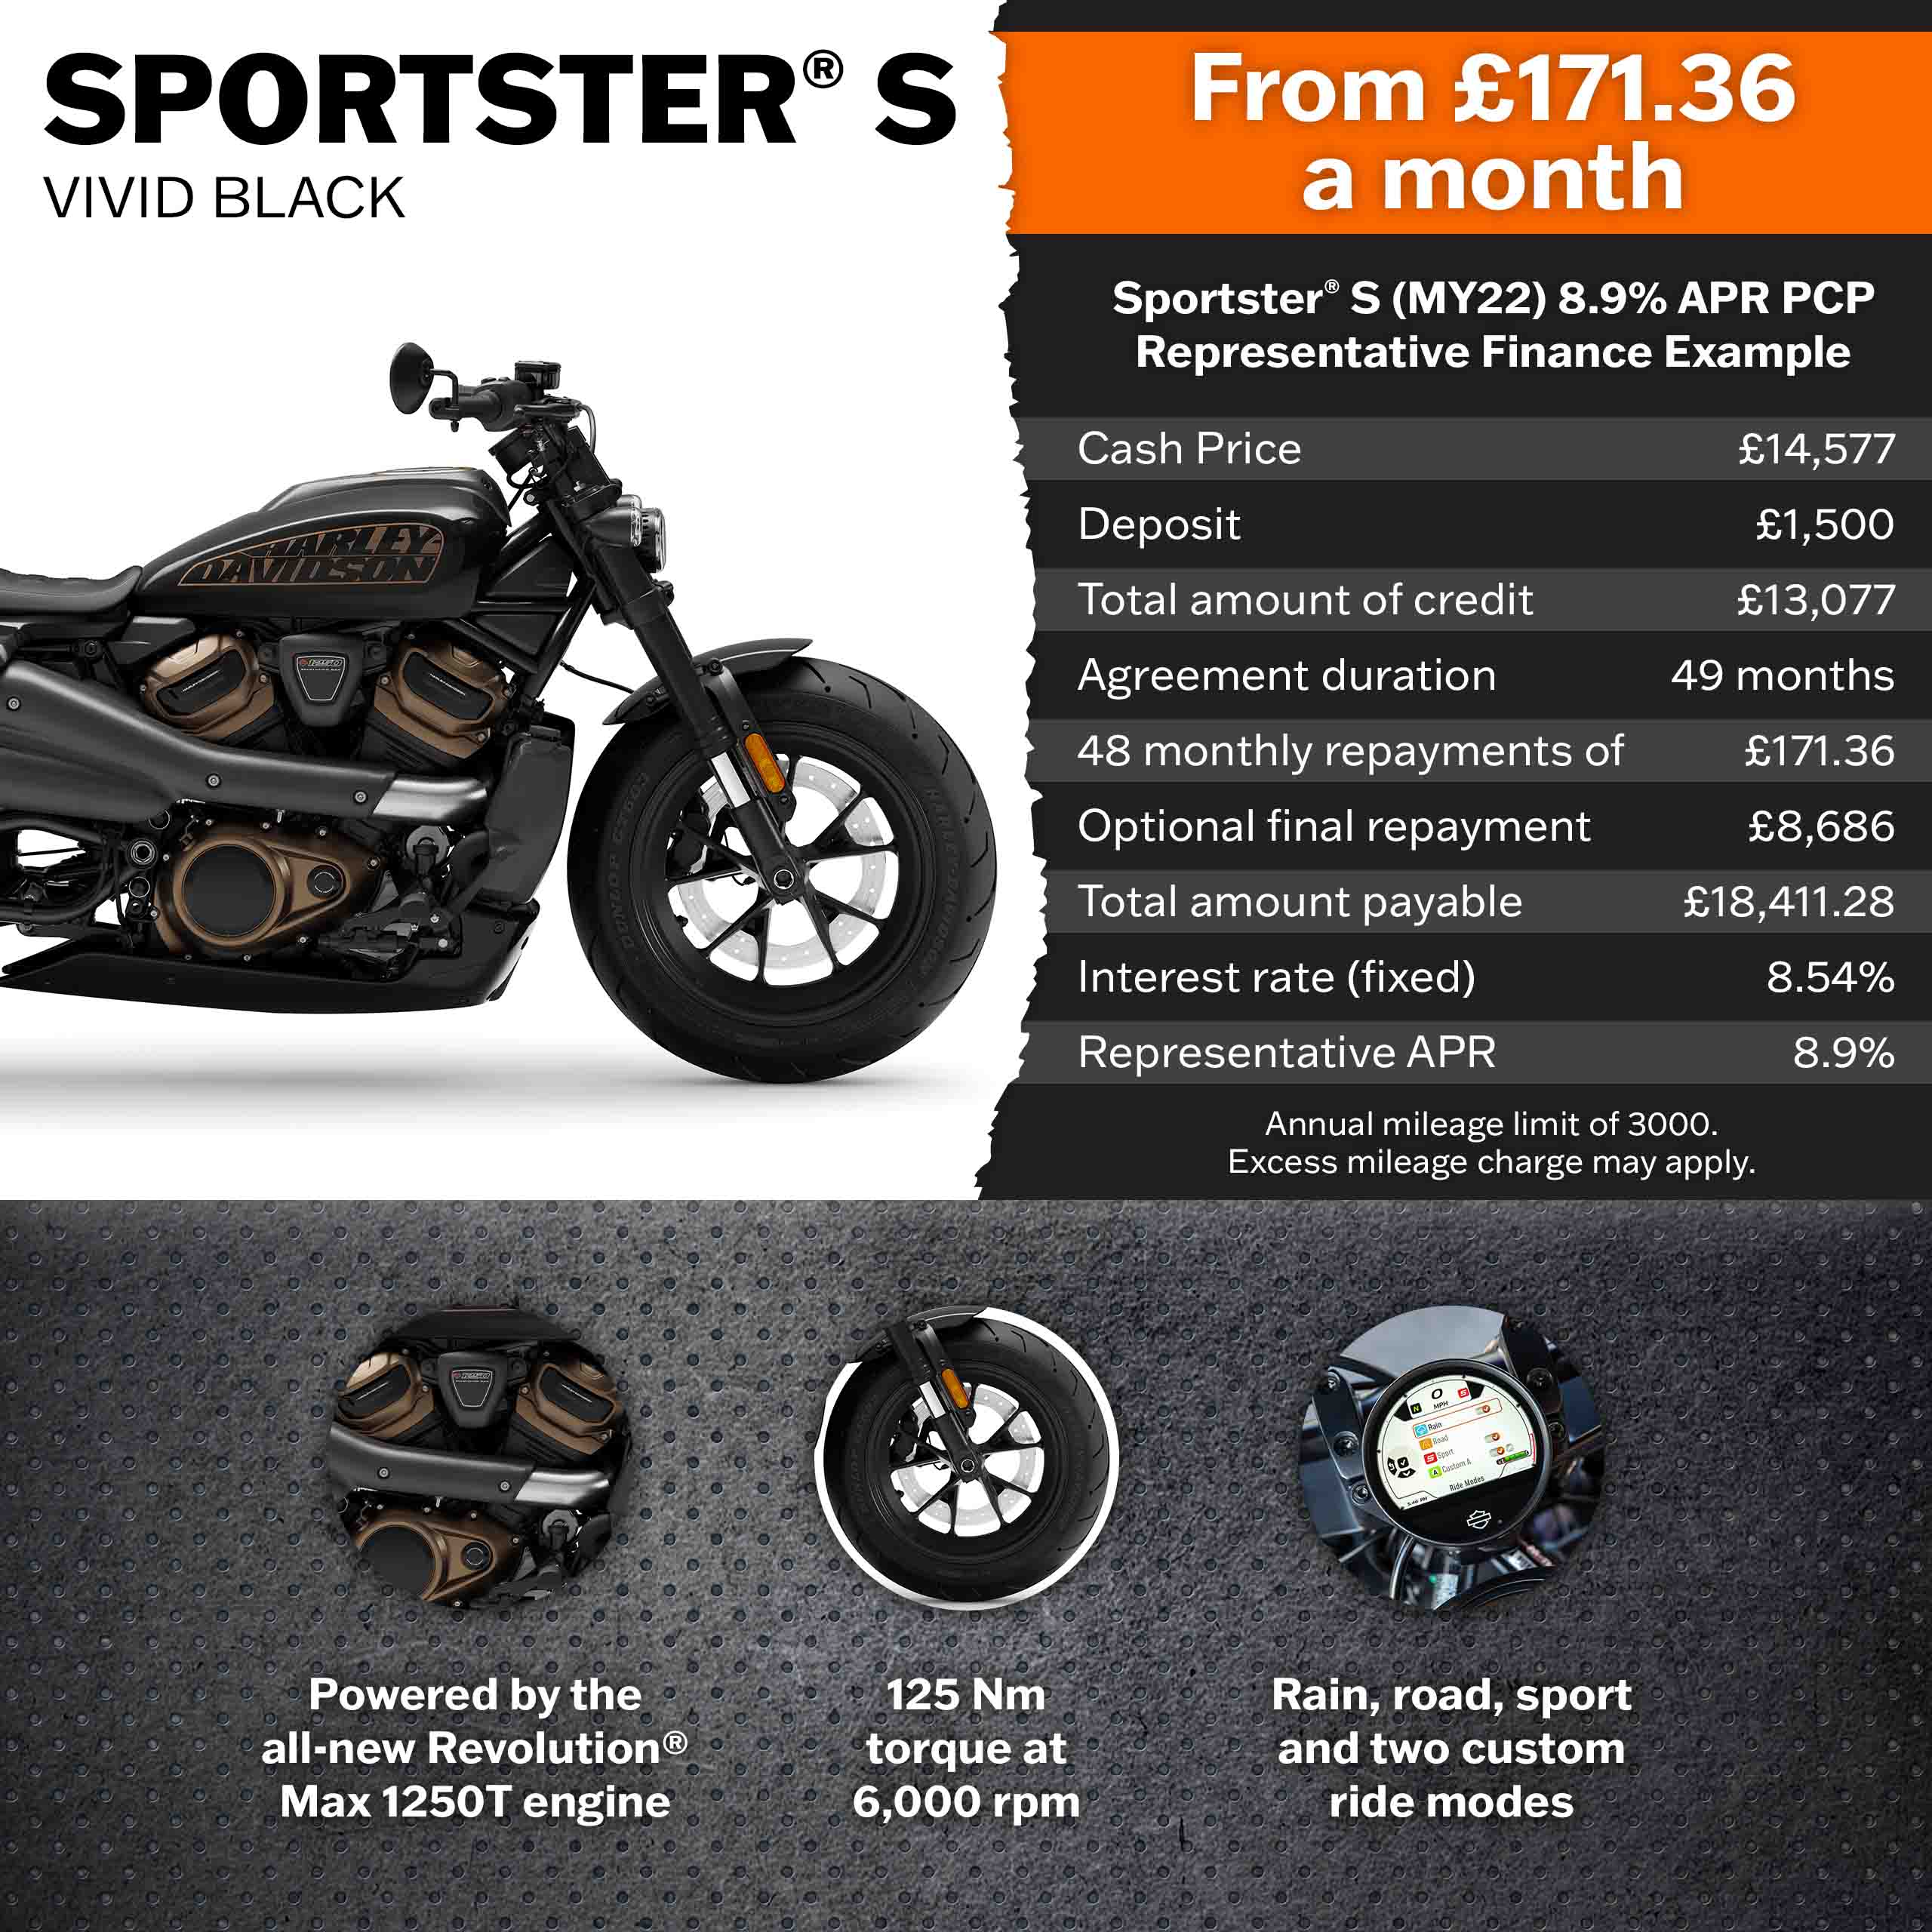 Maidstone Harley-Davidson in-stock bikes